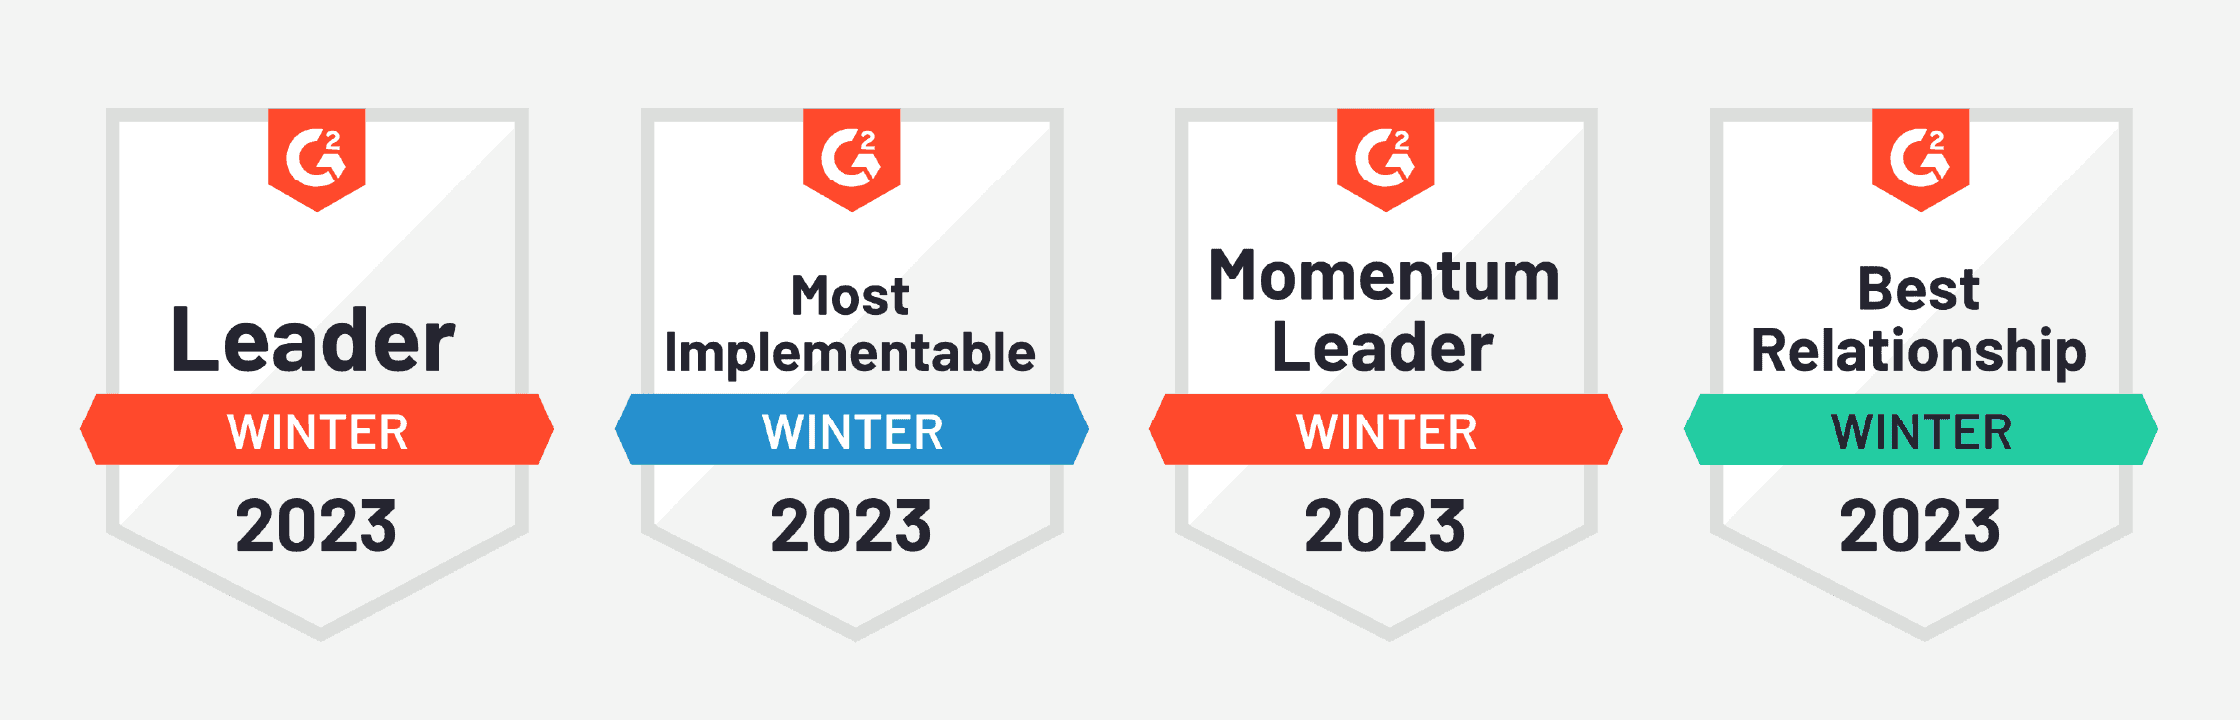 G2 Badges Winter 2023 Leader, Most Implementable, Momentum Leader, Best Relationship